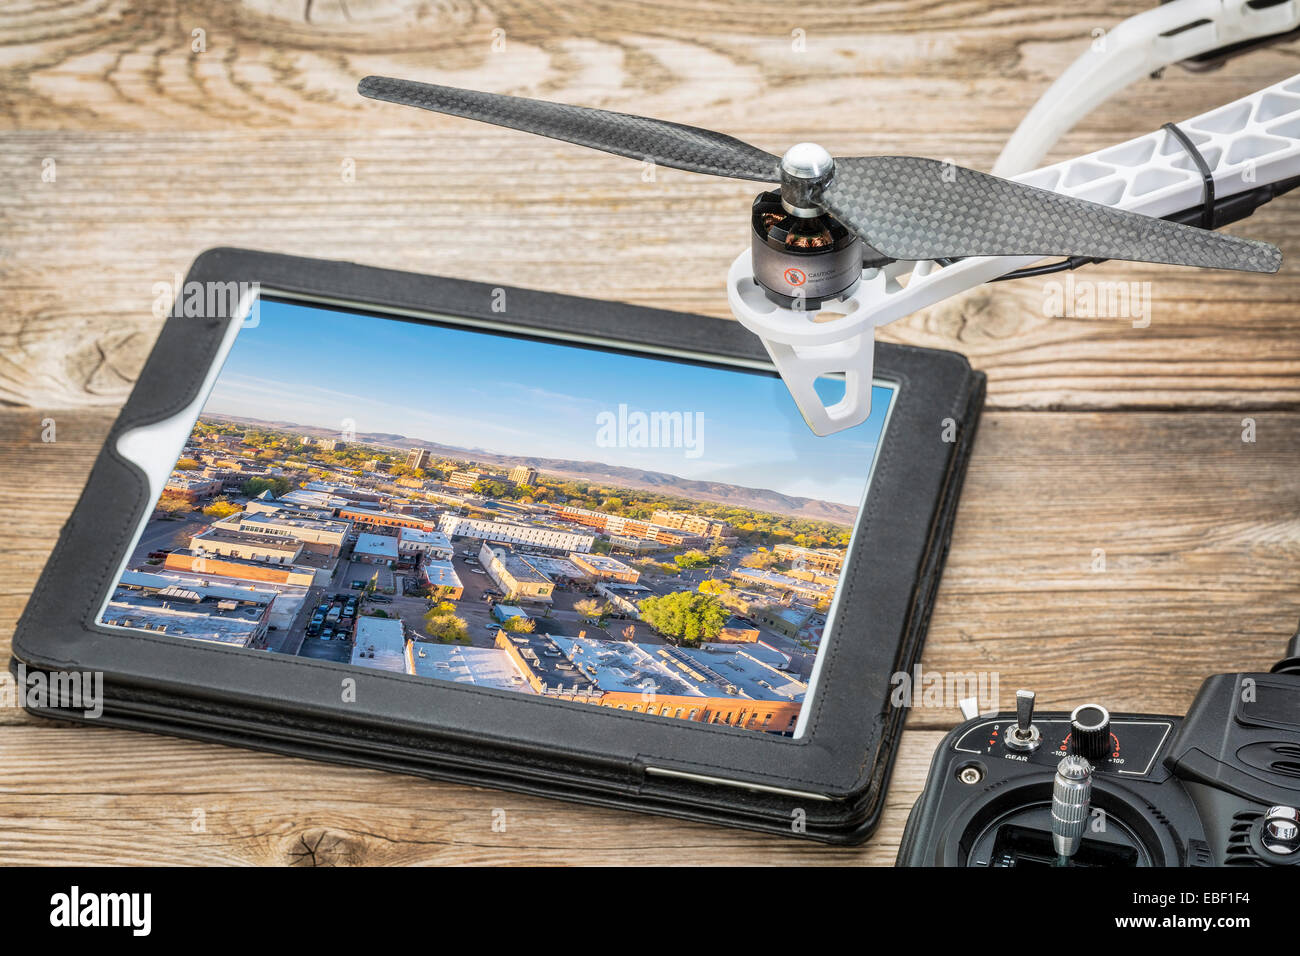 Drone fotografia aerea concetto - rivedere le fotografie aeree di Fort Collins nel centro cittadino su una tavoletta digitale con un drone di rotore Foto Stock